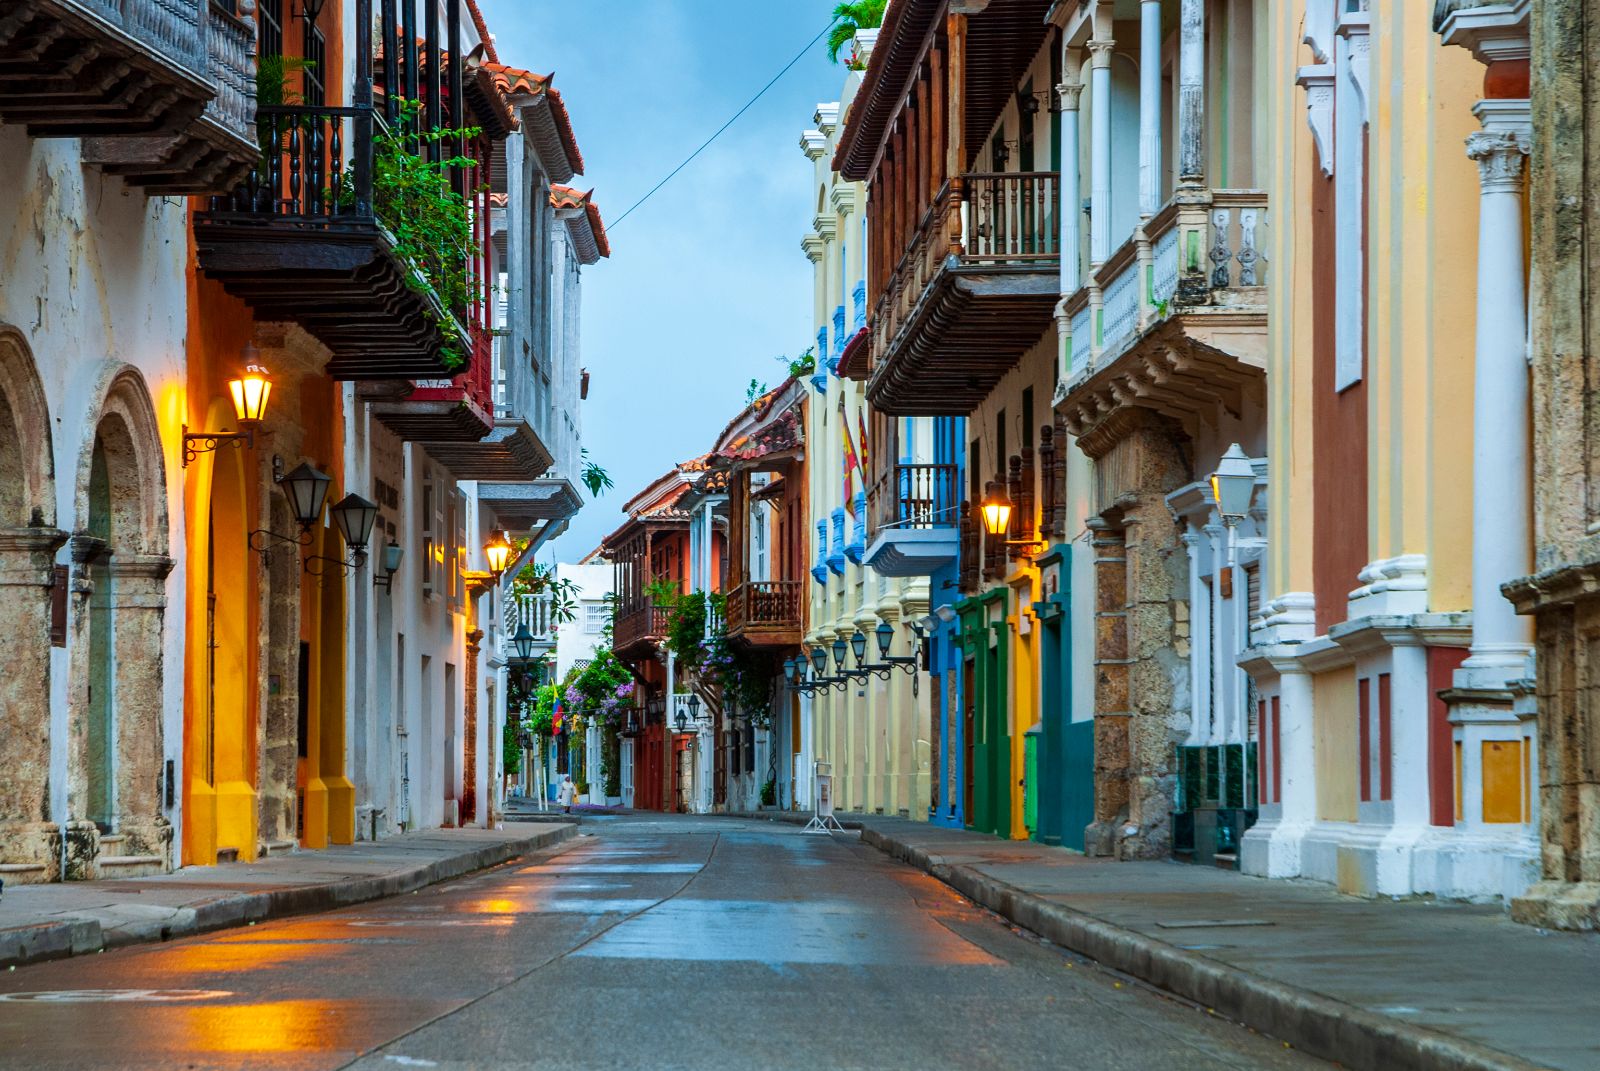 Arquiutectura de Cartagena de Indias, Colombia